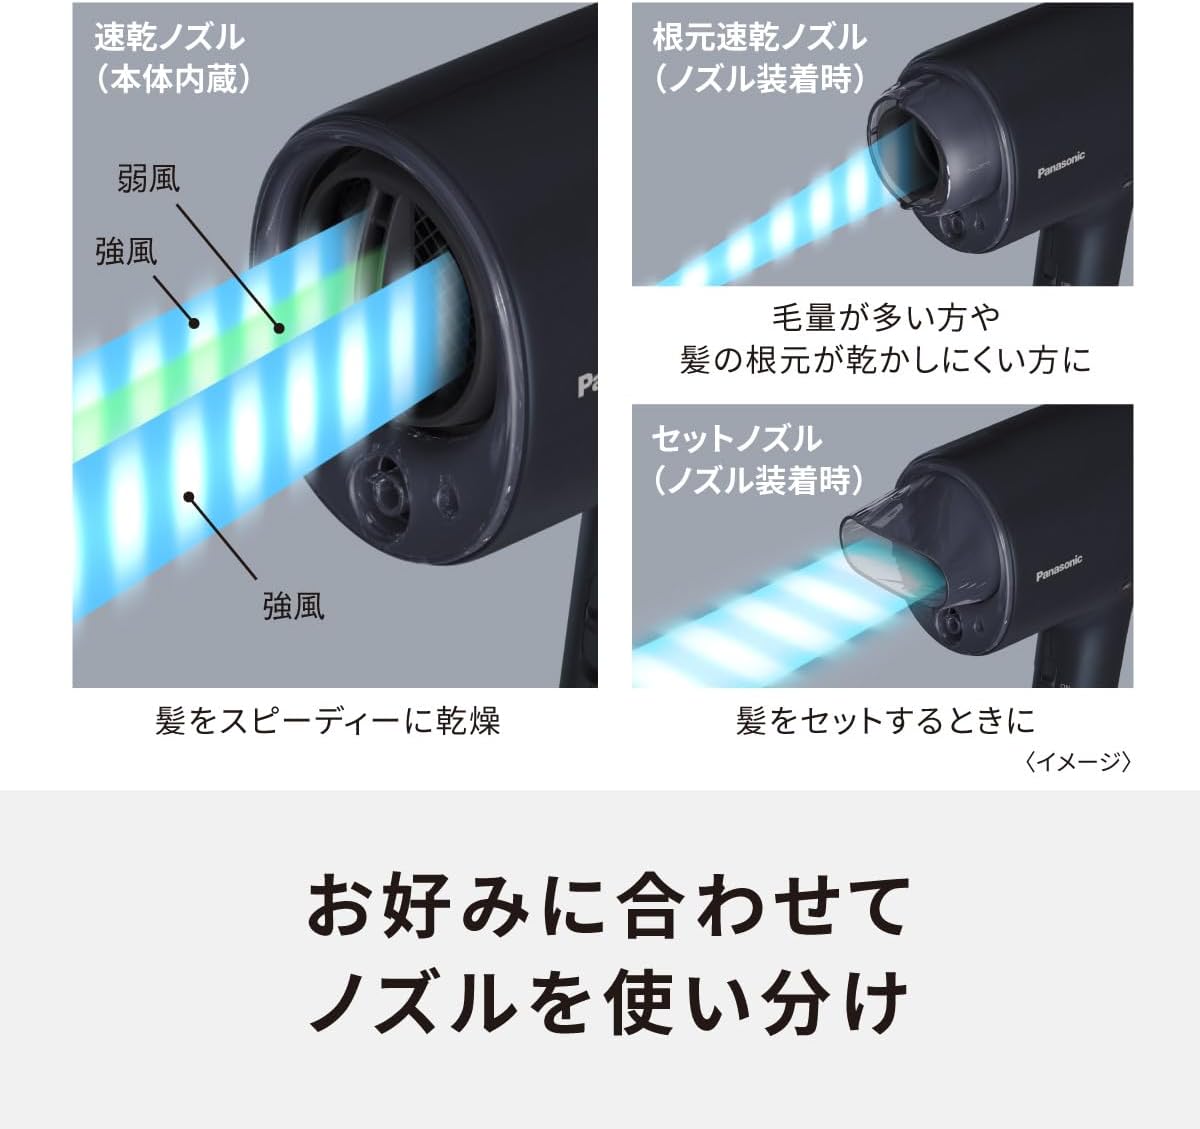 日本品牌 Panasonic 松下 電吹風 納米水離子 搭載高滲透納米水離子&礦物質緊湊型 深海軍藍 EH-NA0J-A_YOUTW_588